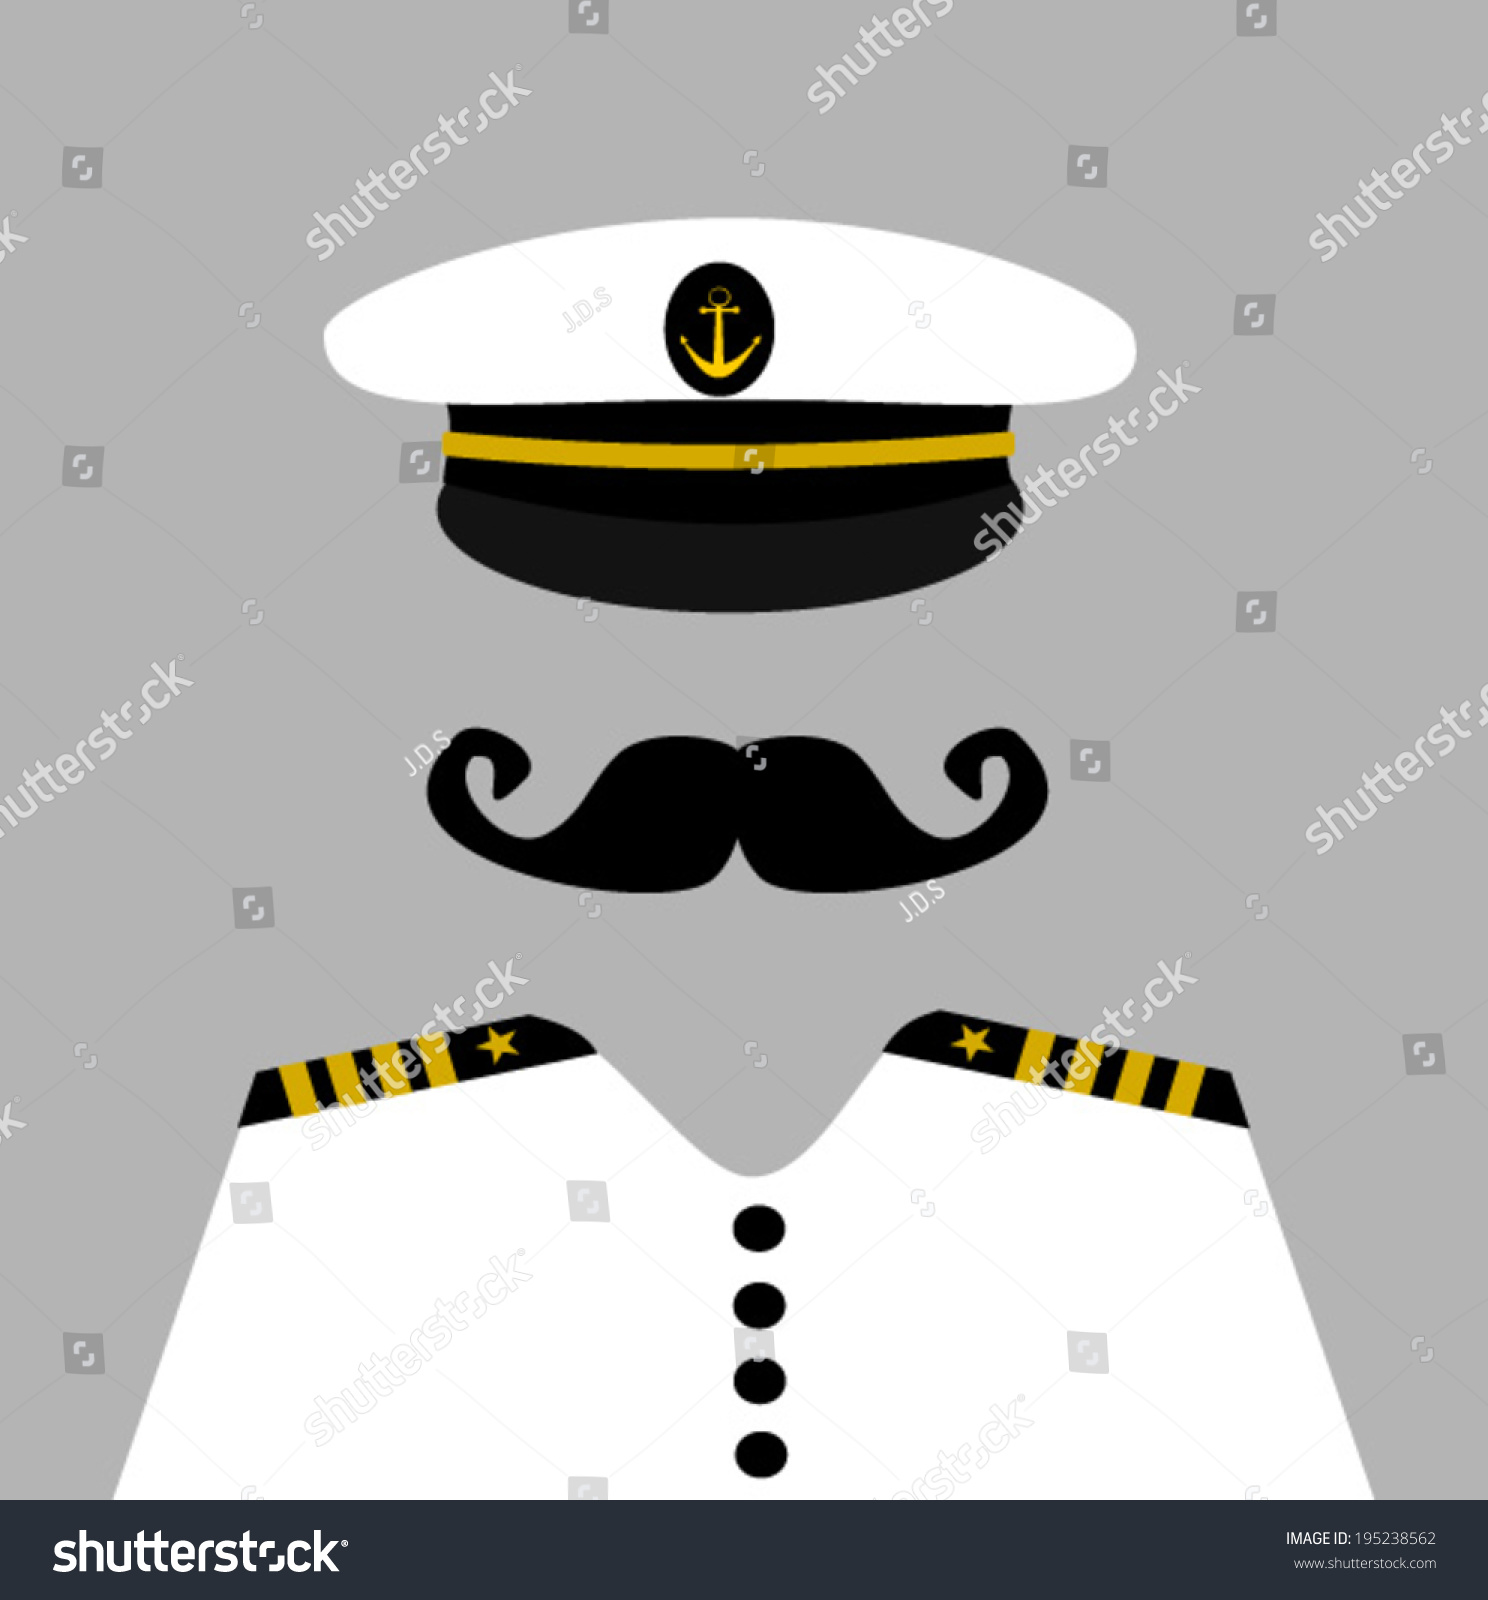 captain hat clipart - photo #28